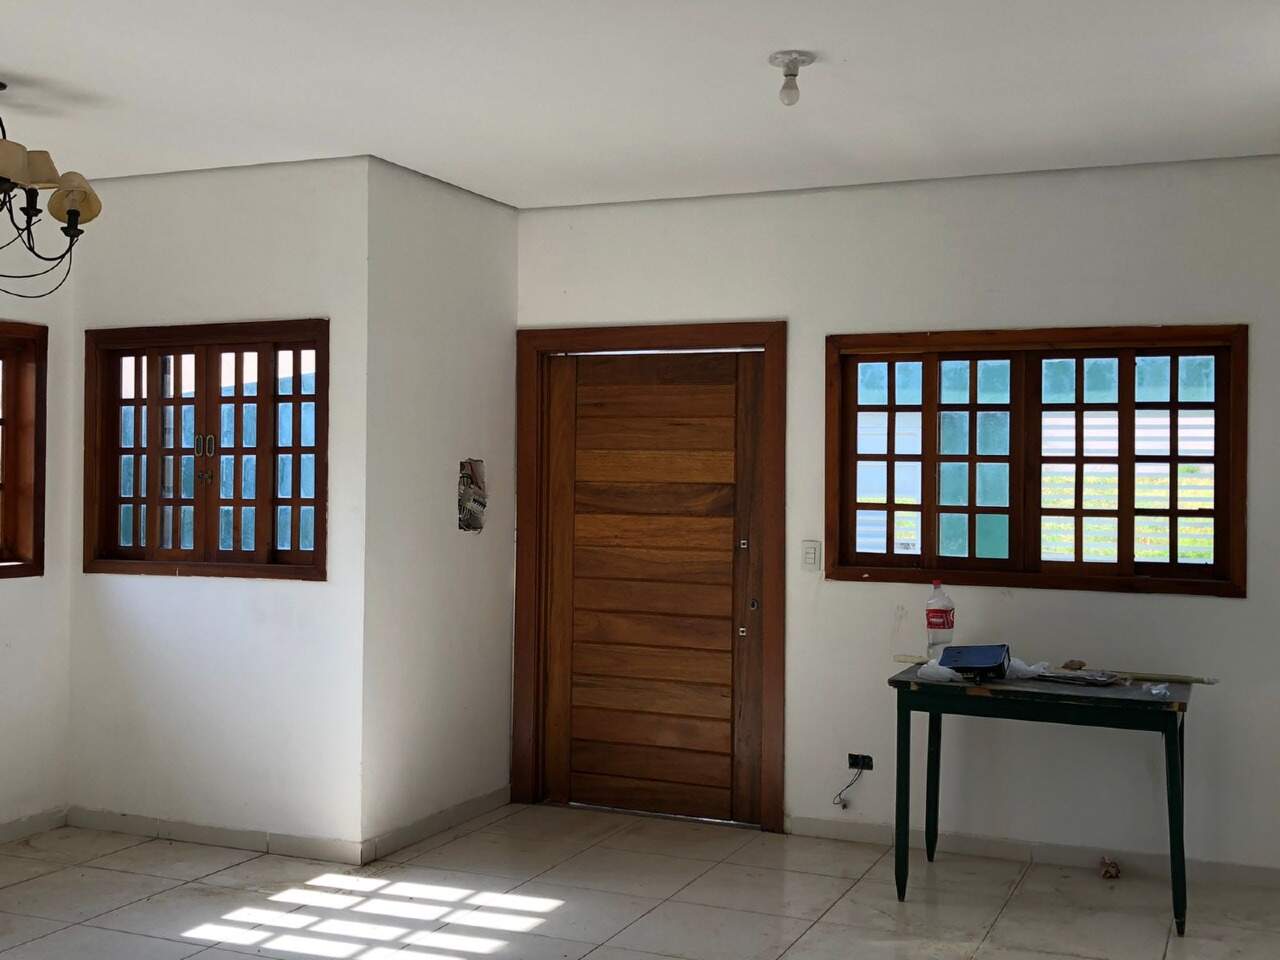 Casa à venda, 3 quartos, sendo 1 suíte, 4 vagas, no bairro Parque Conceição em Piracicaba - SP